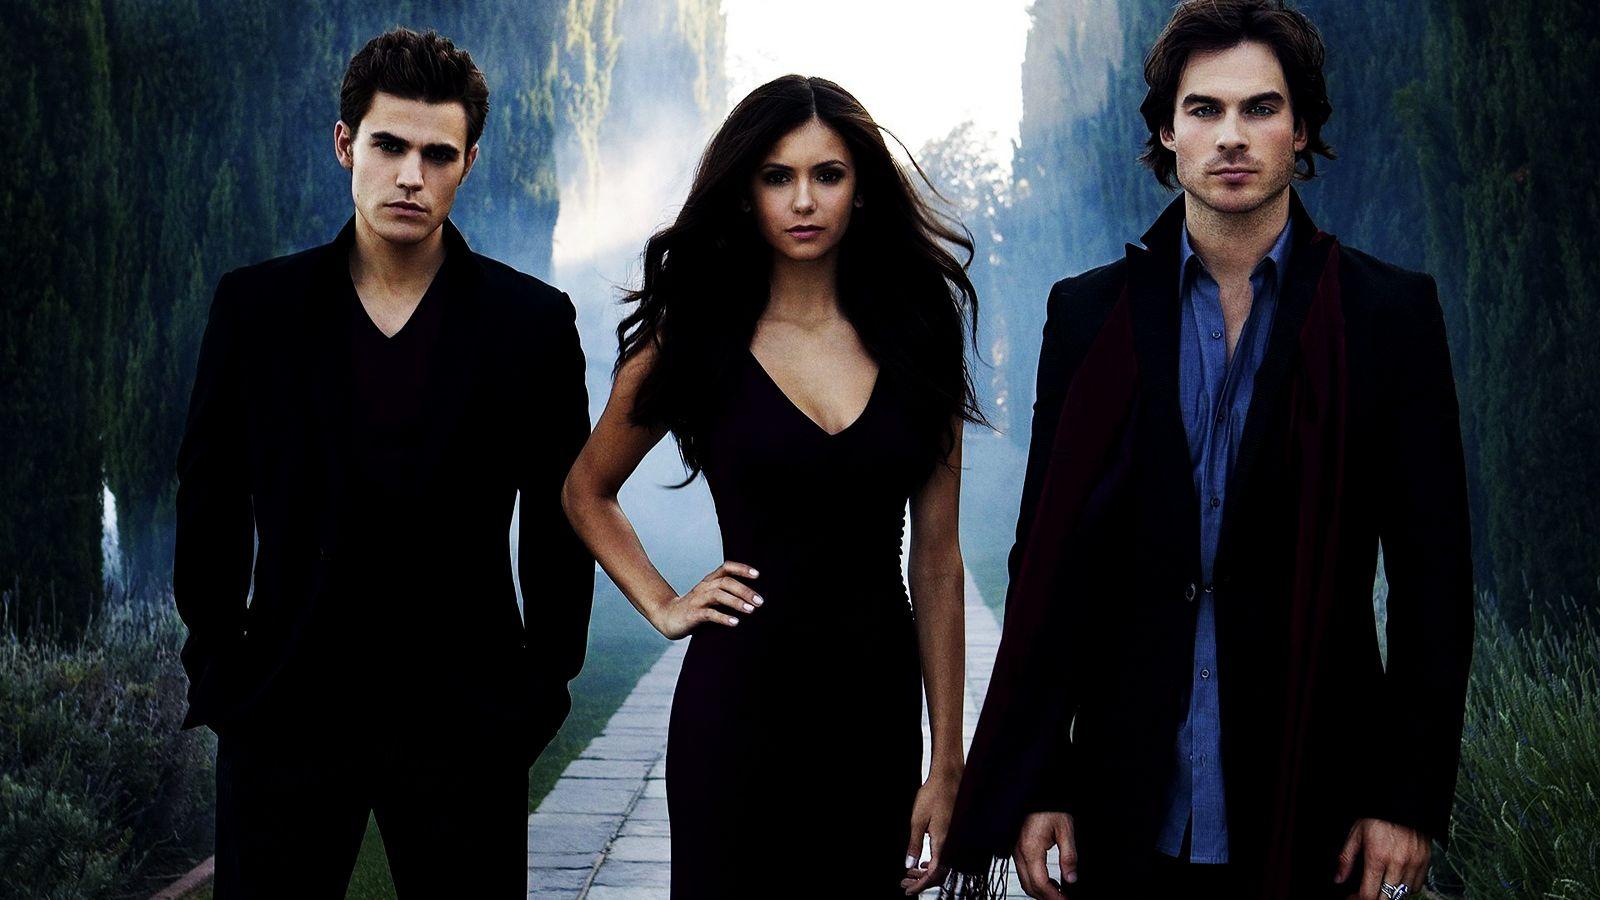 Vampire Diaries Wallpaper. Stefan Elena and Damon Vampire Diaries HD Wallpaper. Vampire diaries wallpaper, Vampire diaries, Vampire diaries cast